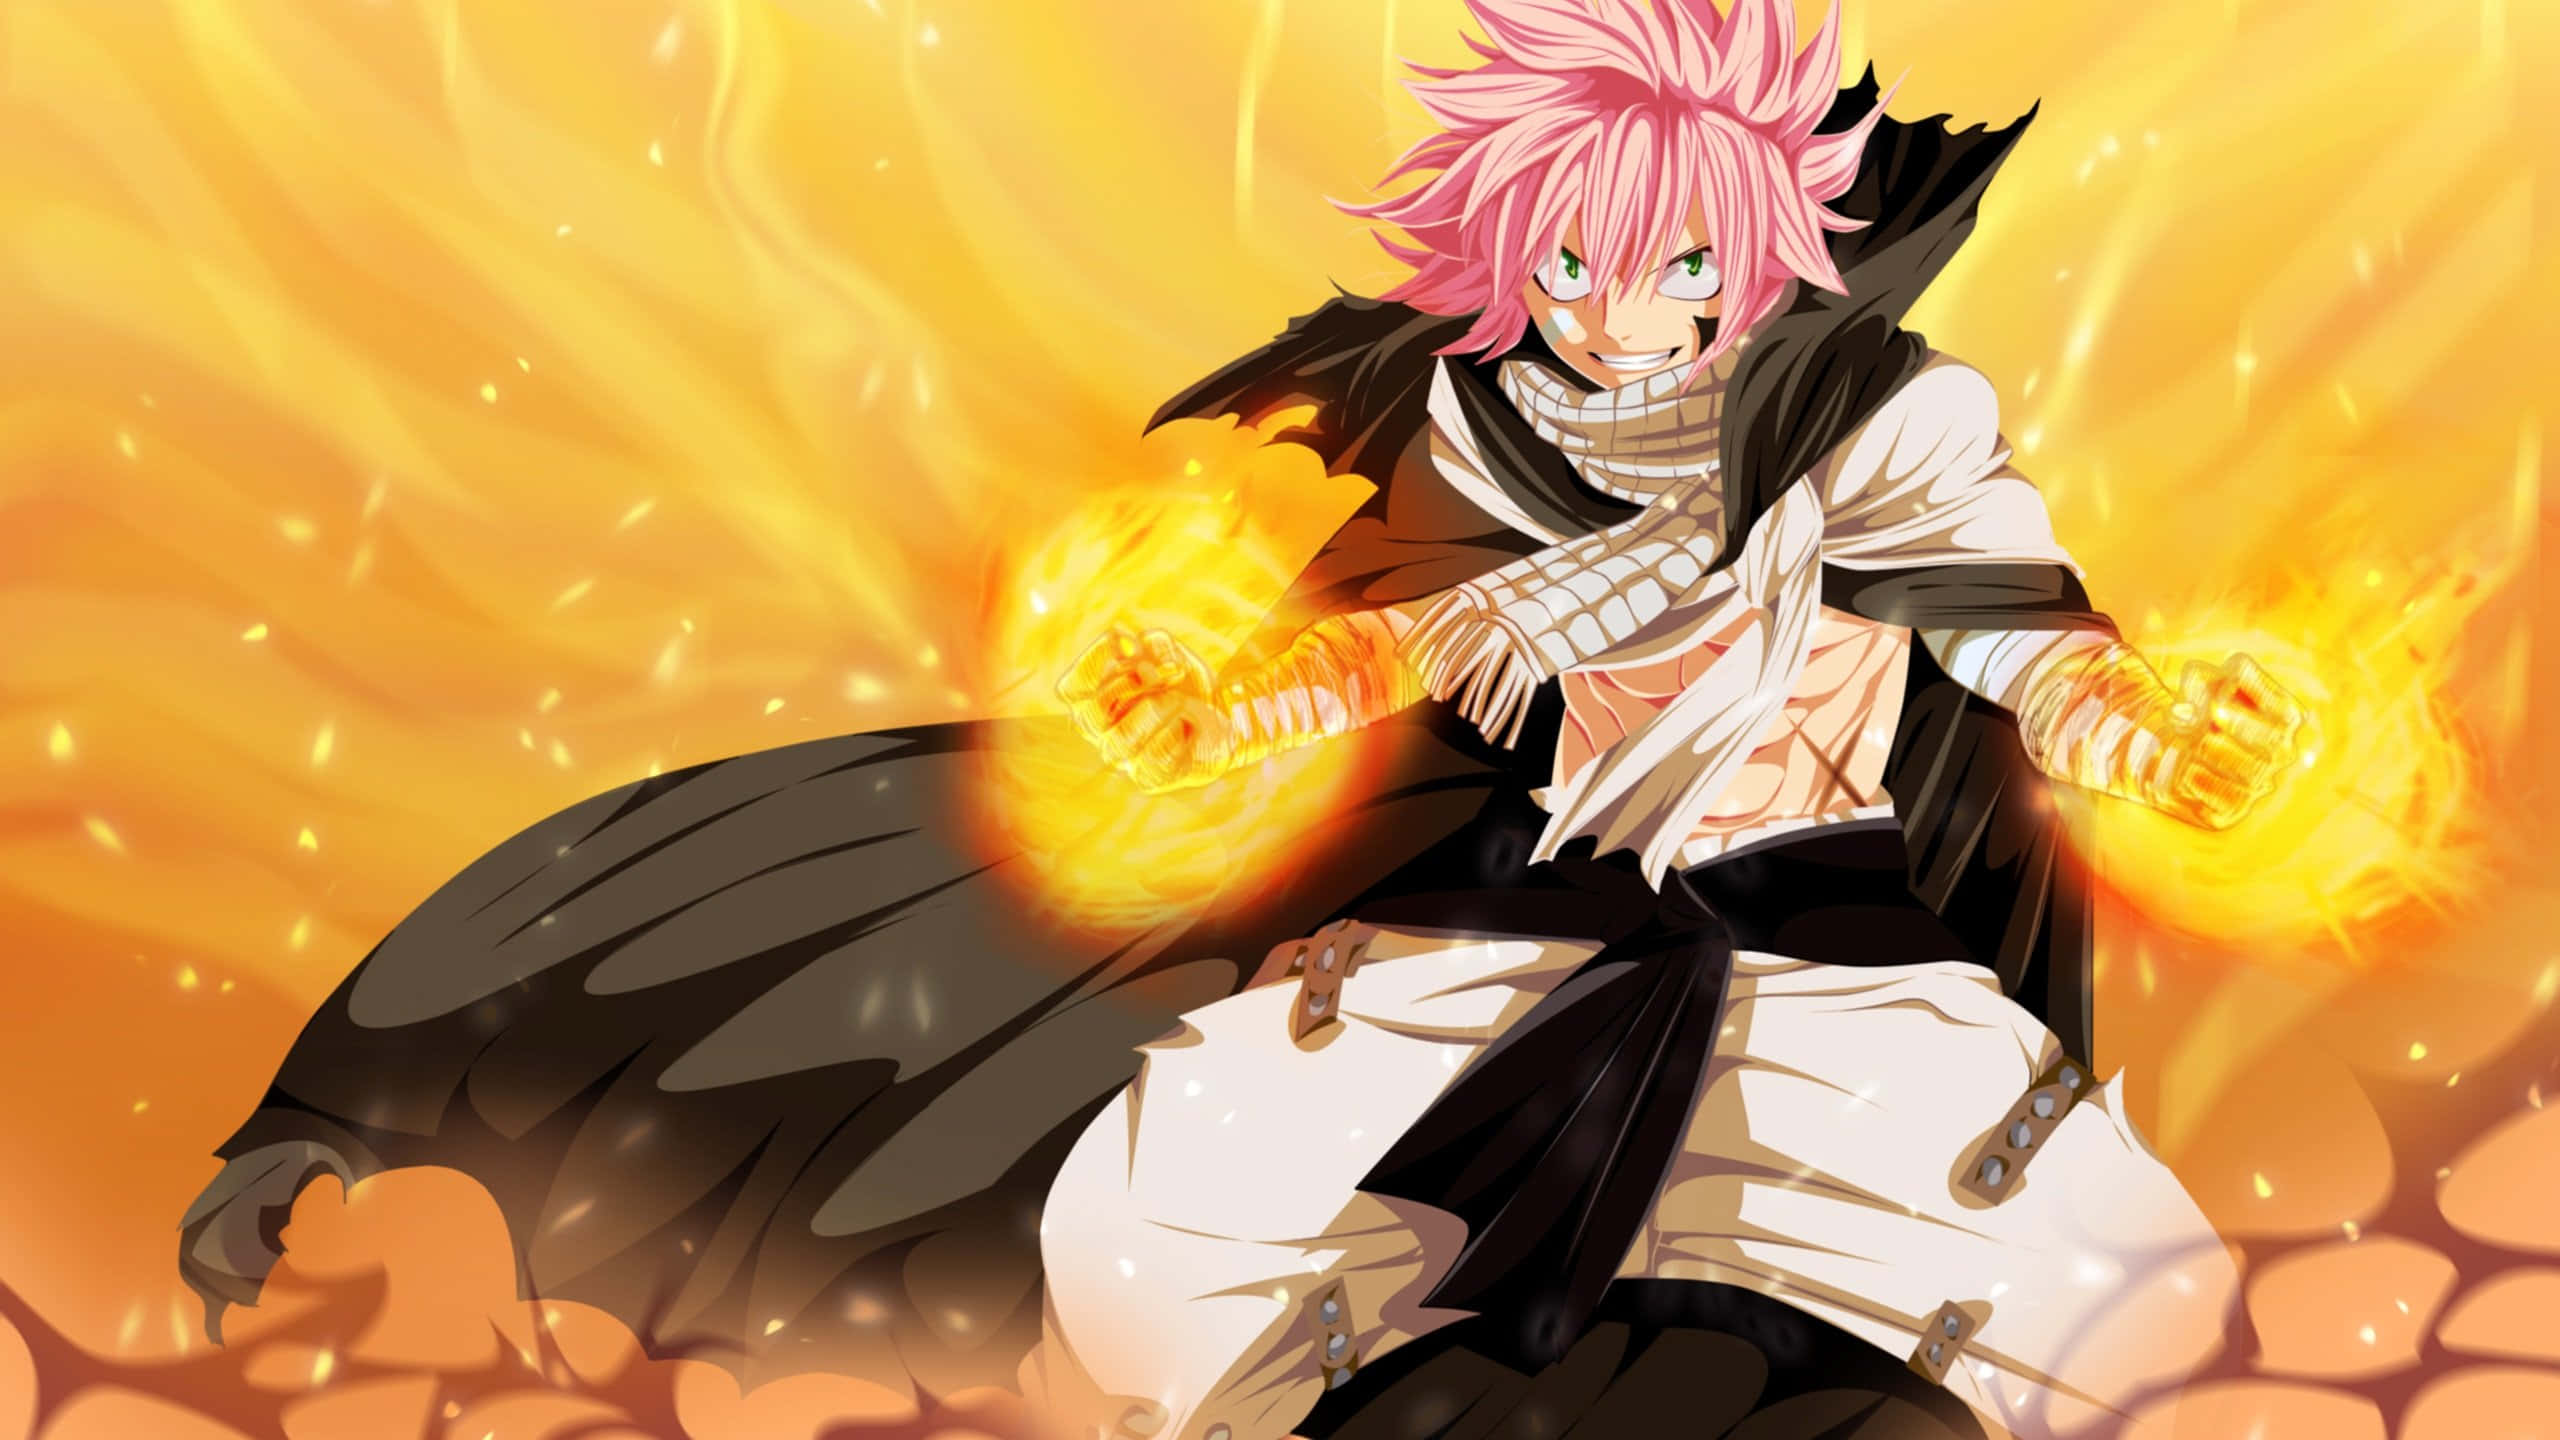 Natsu Dragneel Unleashing Power In A Fiery Battle